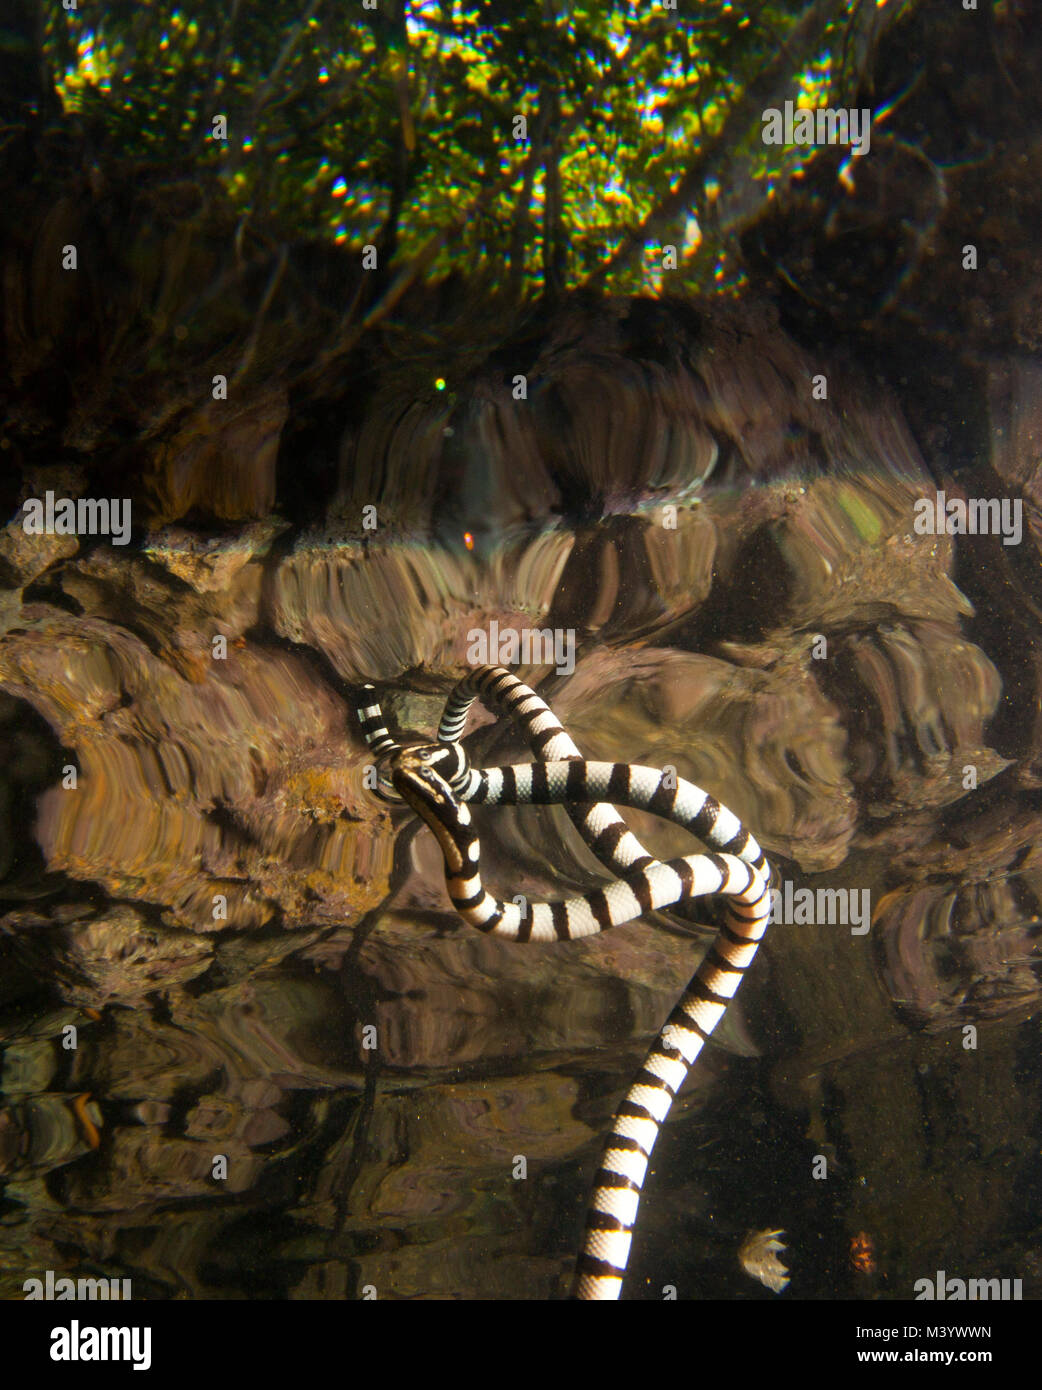 Una serpiente de mar que es reflejada por la superficie del agua Foto de stock